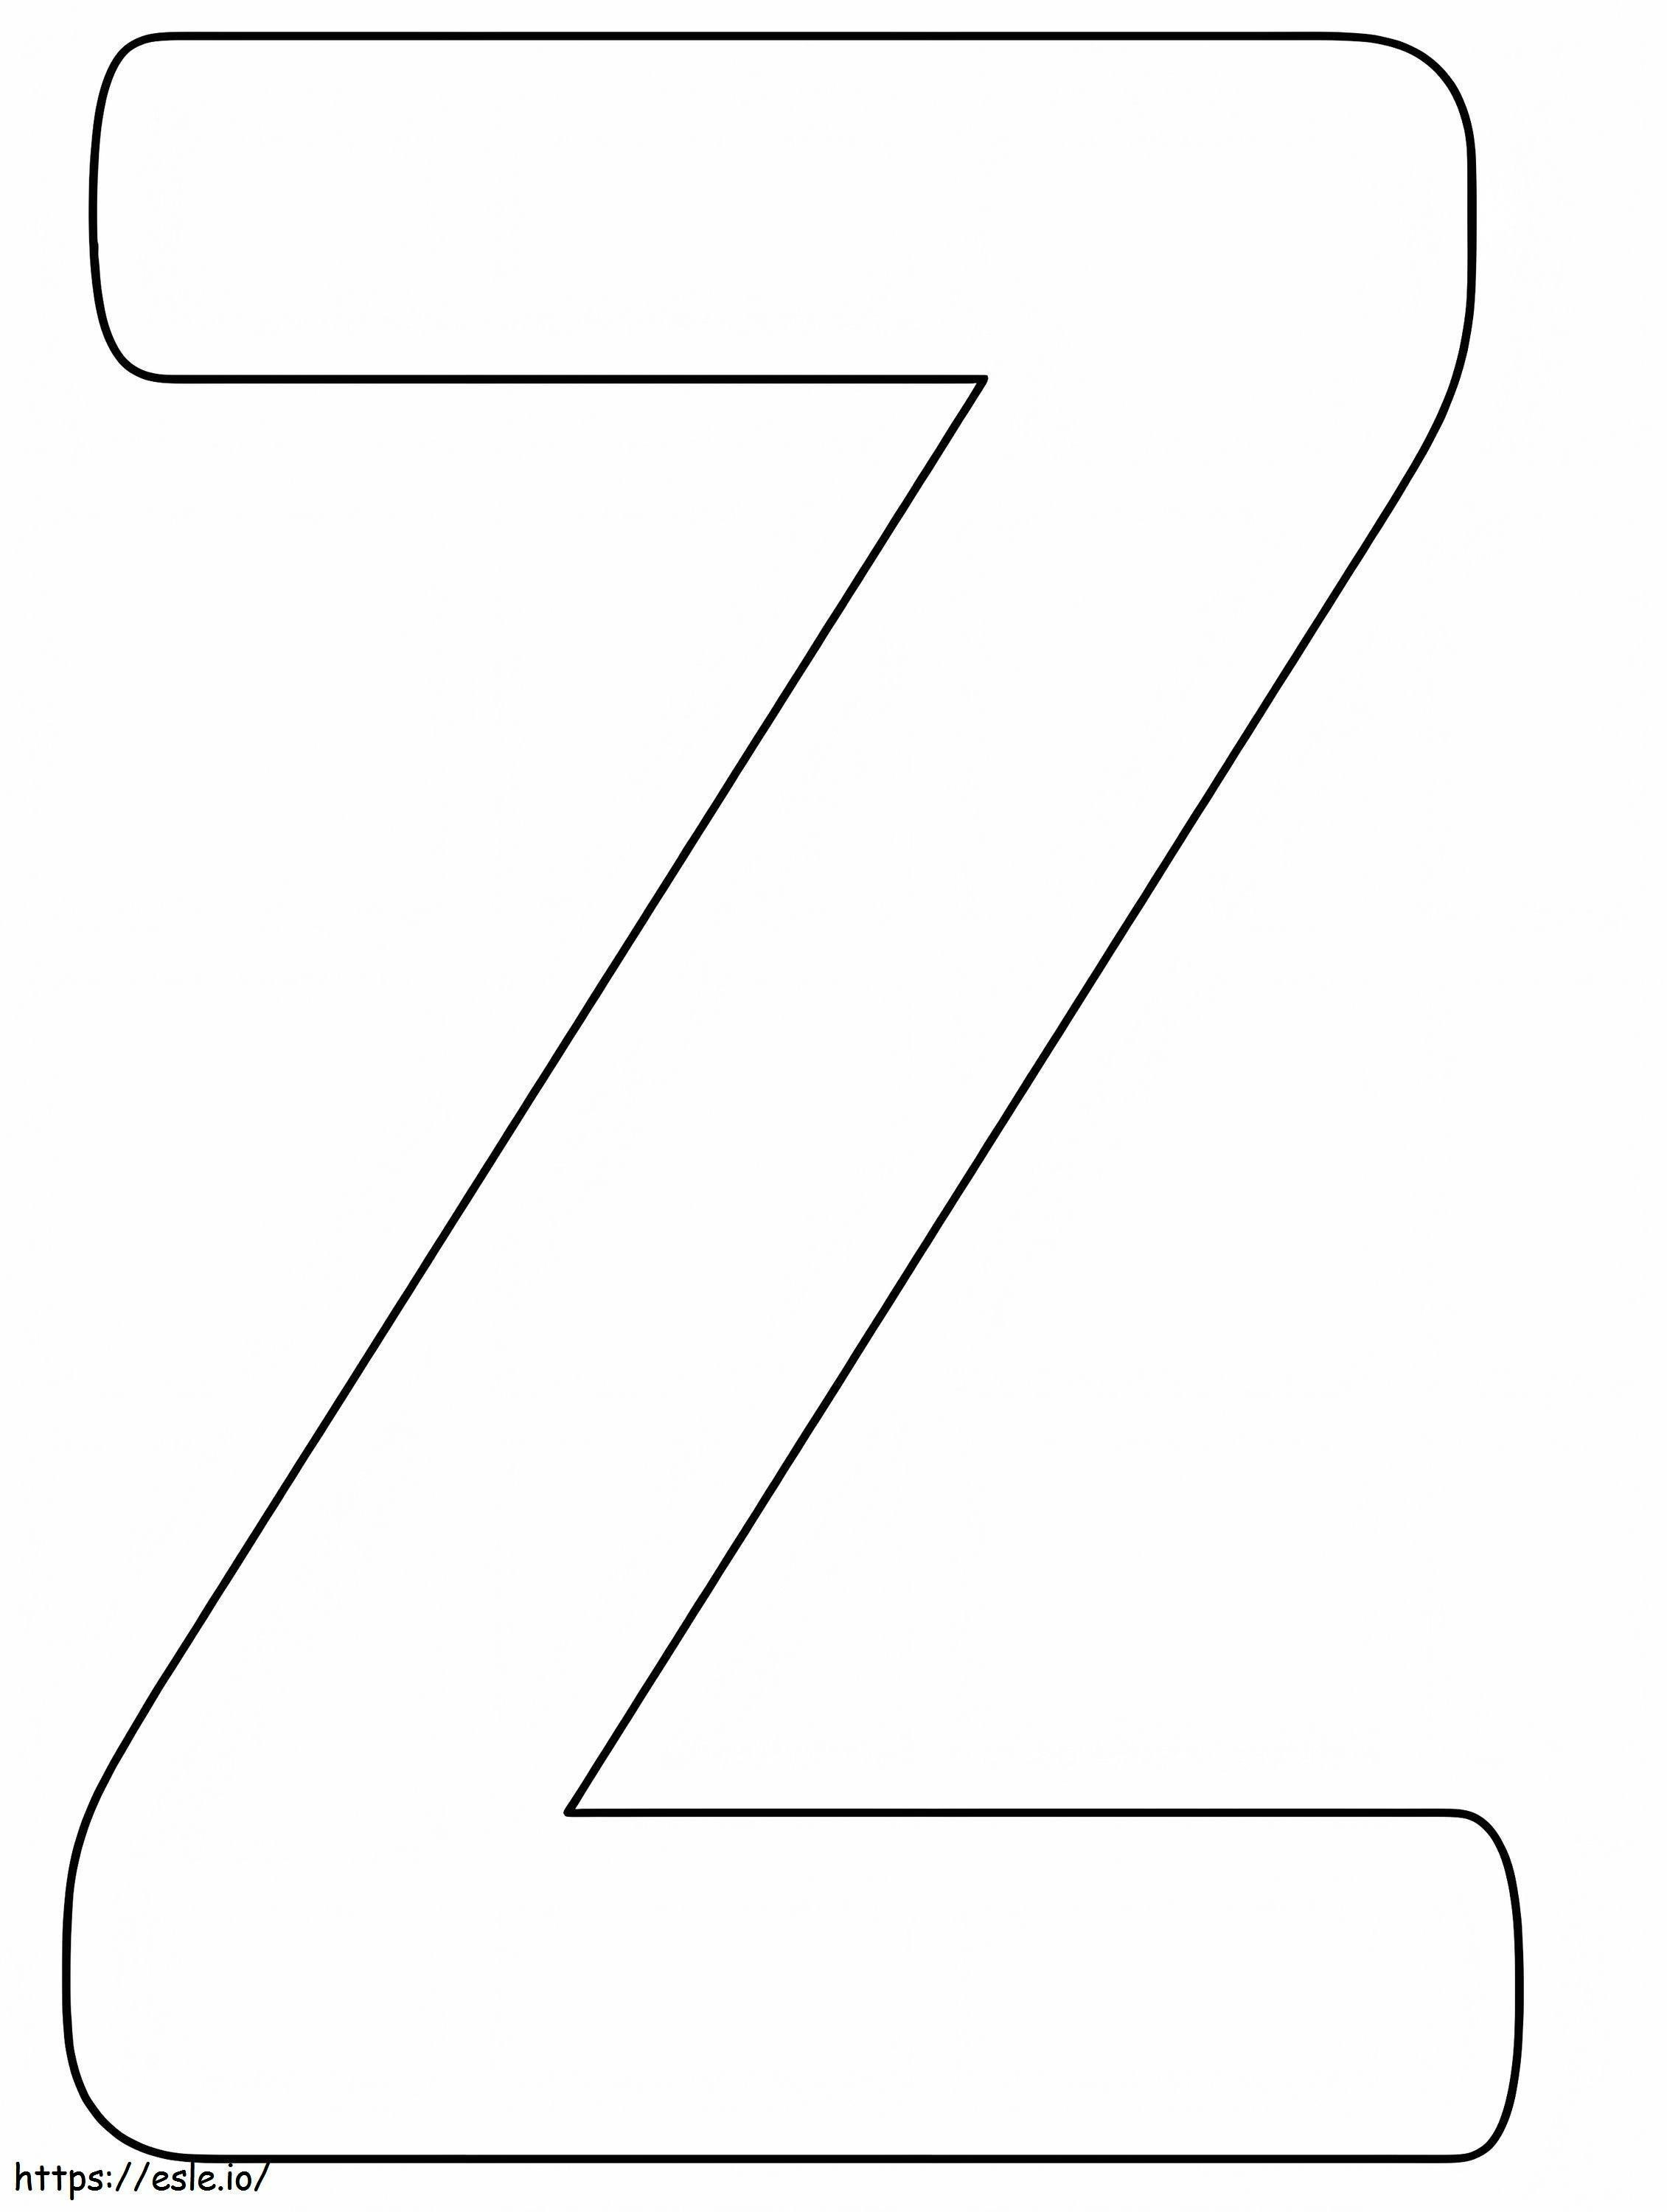 Grundbuchstabe Z ausmalbilder